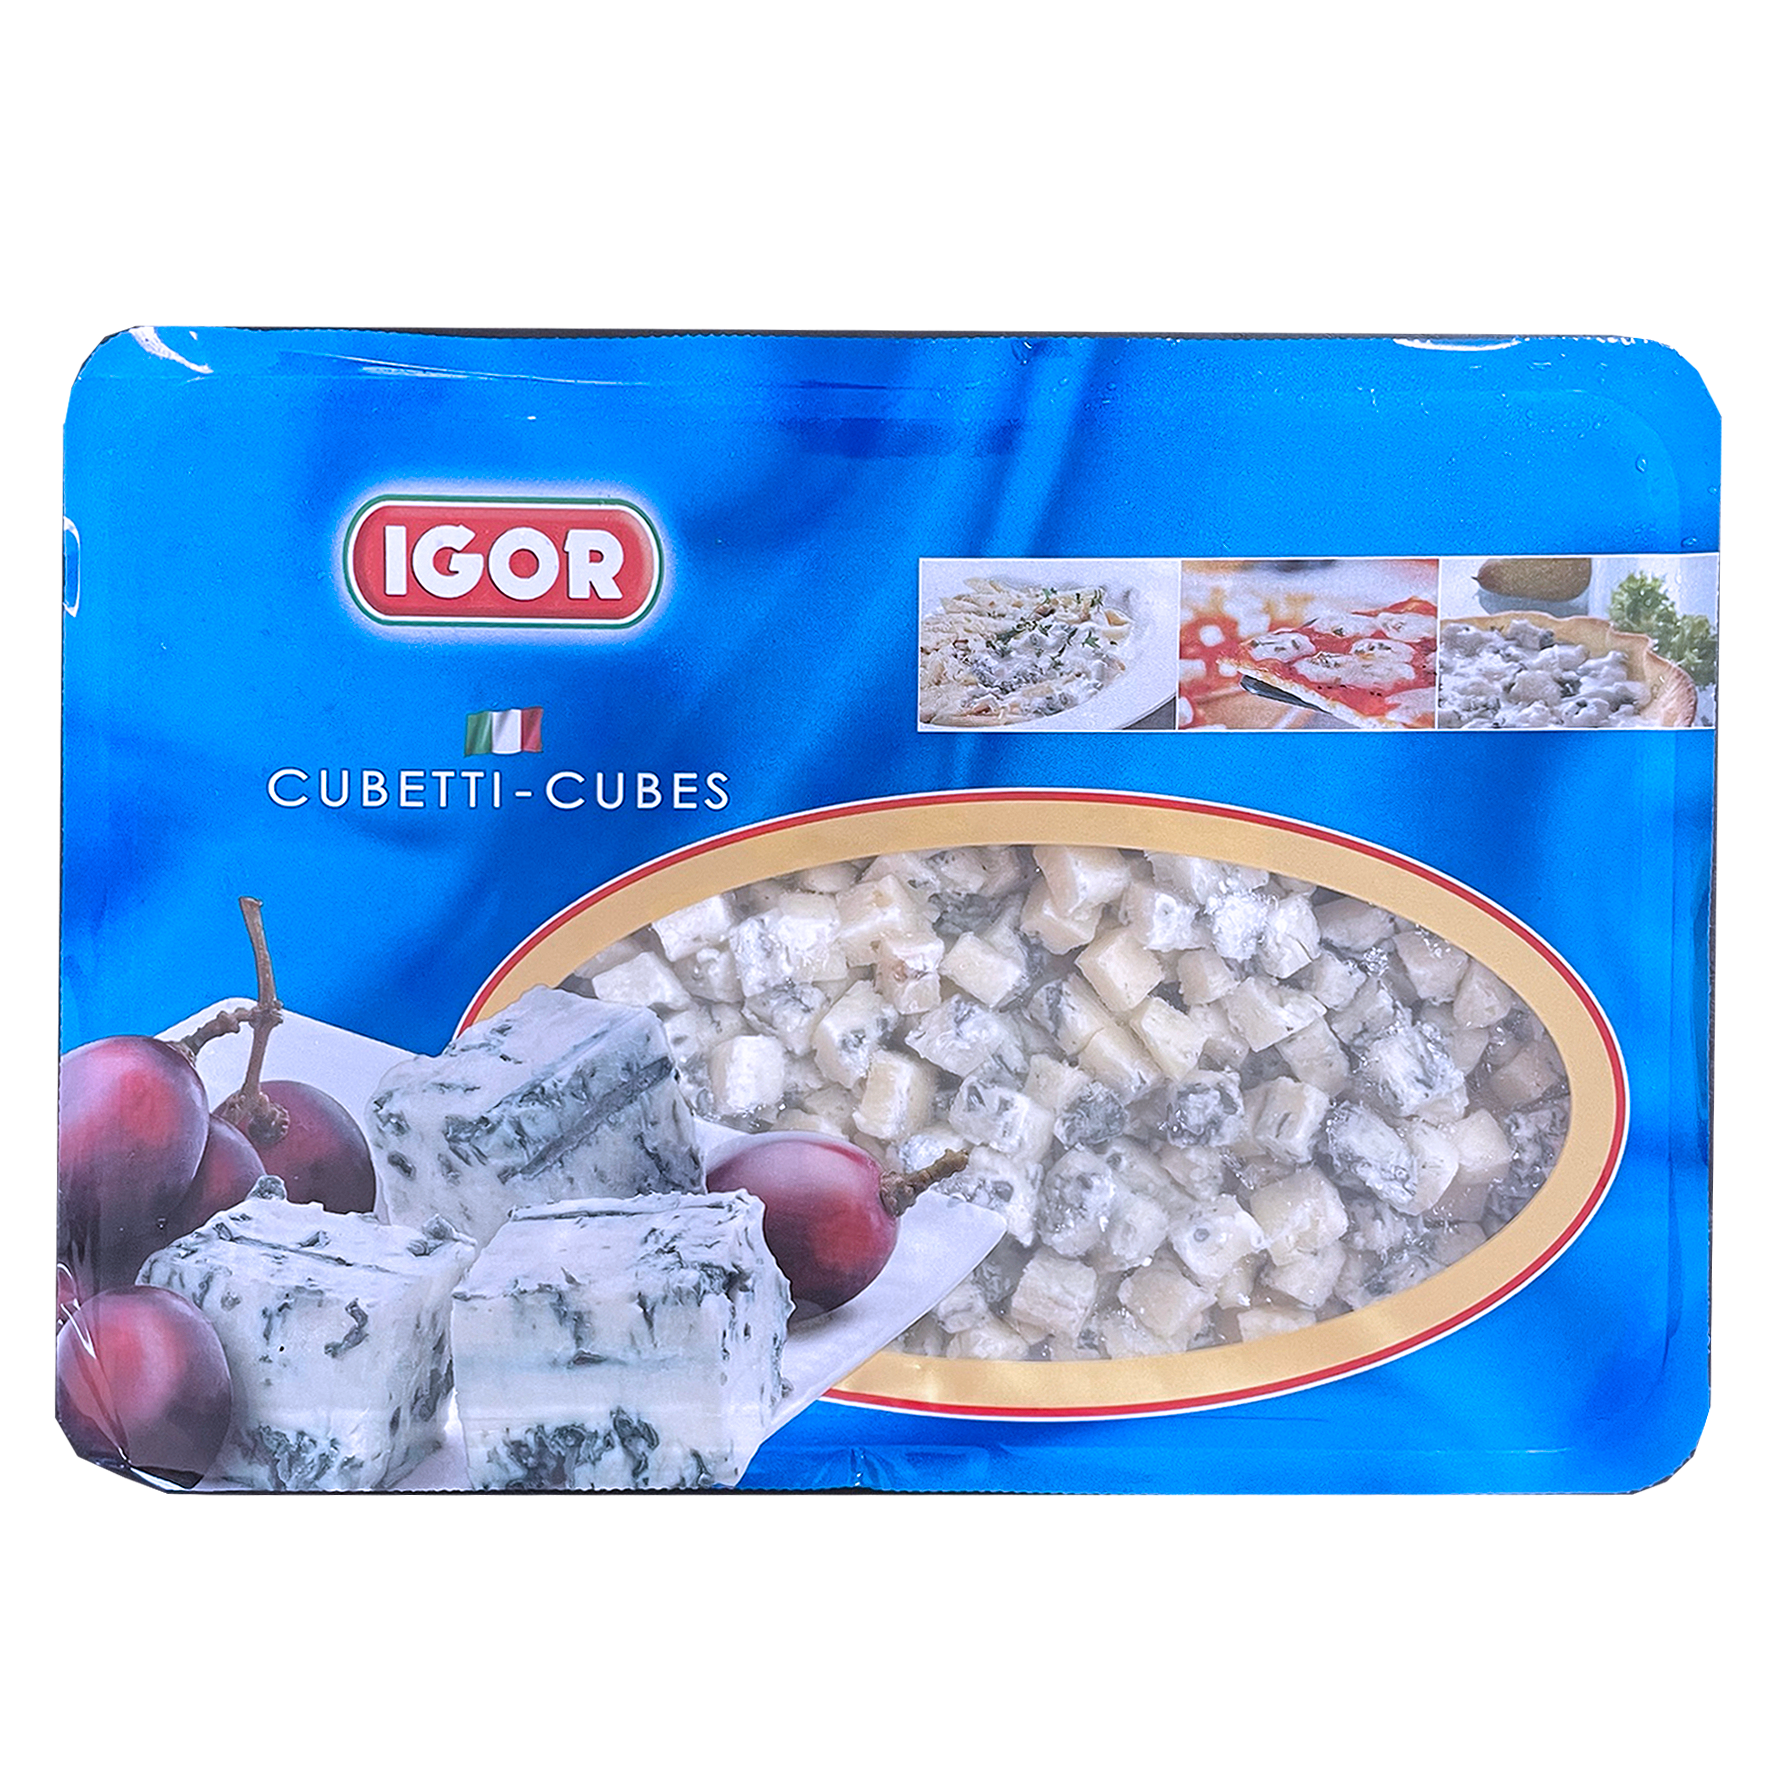 無添加 冷凍 ゴルゴンゾーラ ブルーチーズ ピカンテ ダイス イタリア産 (600g) ホライズンファームズ